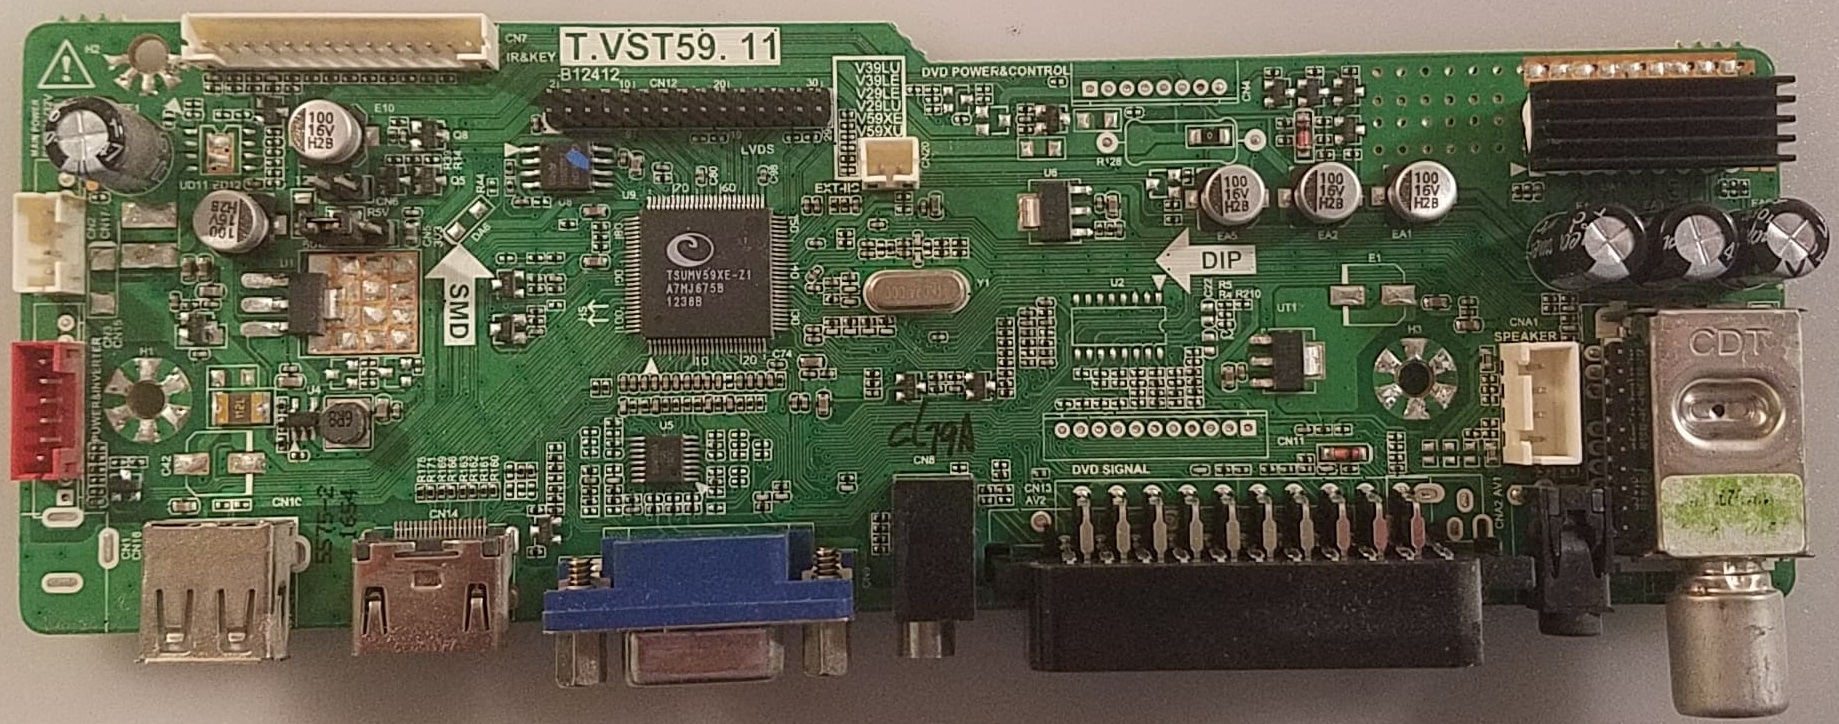 T.vst59.11_Firmware